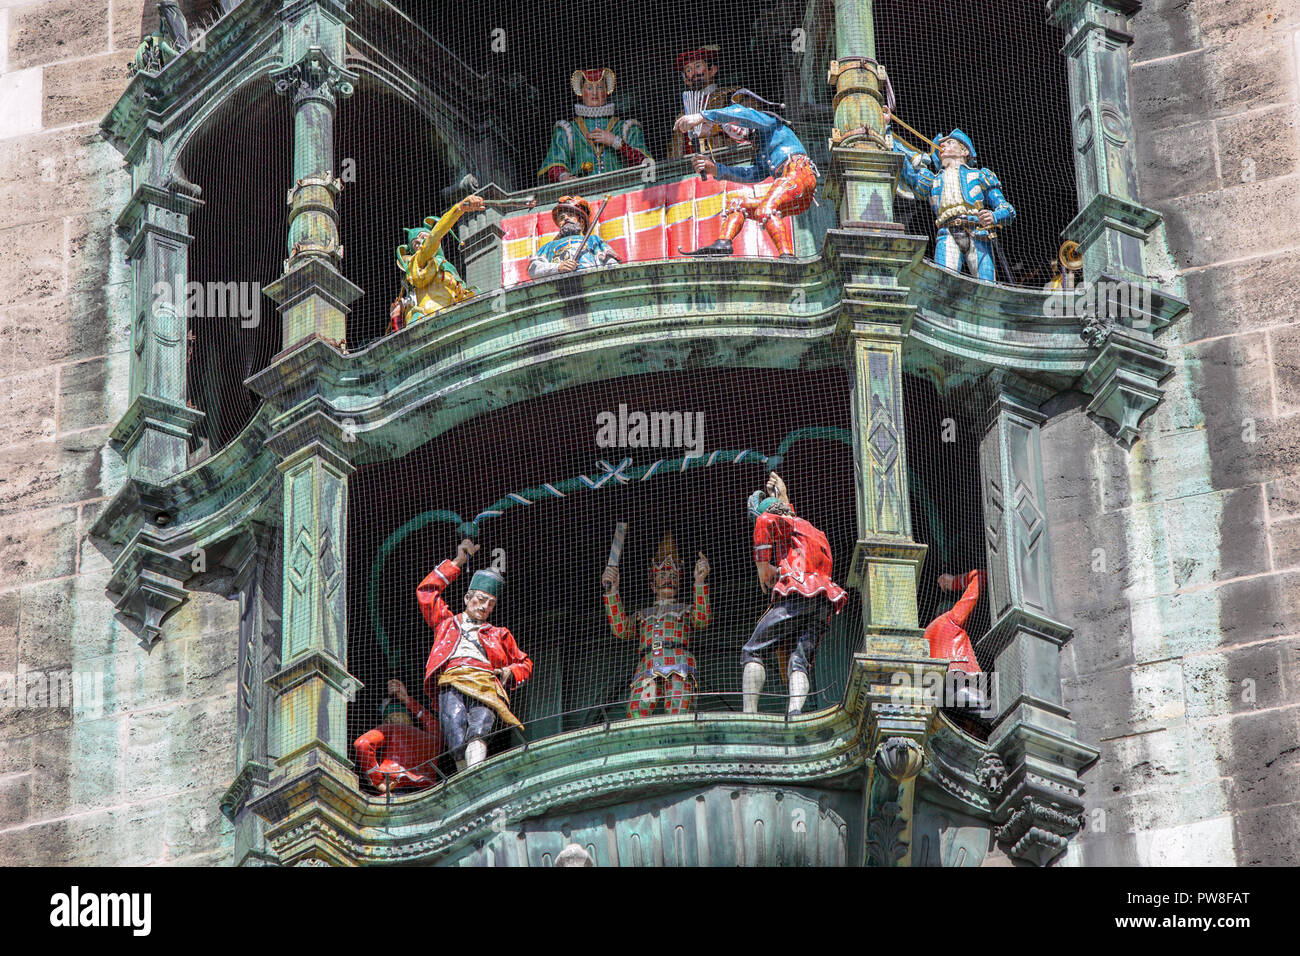 Close-up image of the Glockenspiel in Marienplatz, Munich. Stock Photo